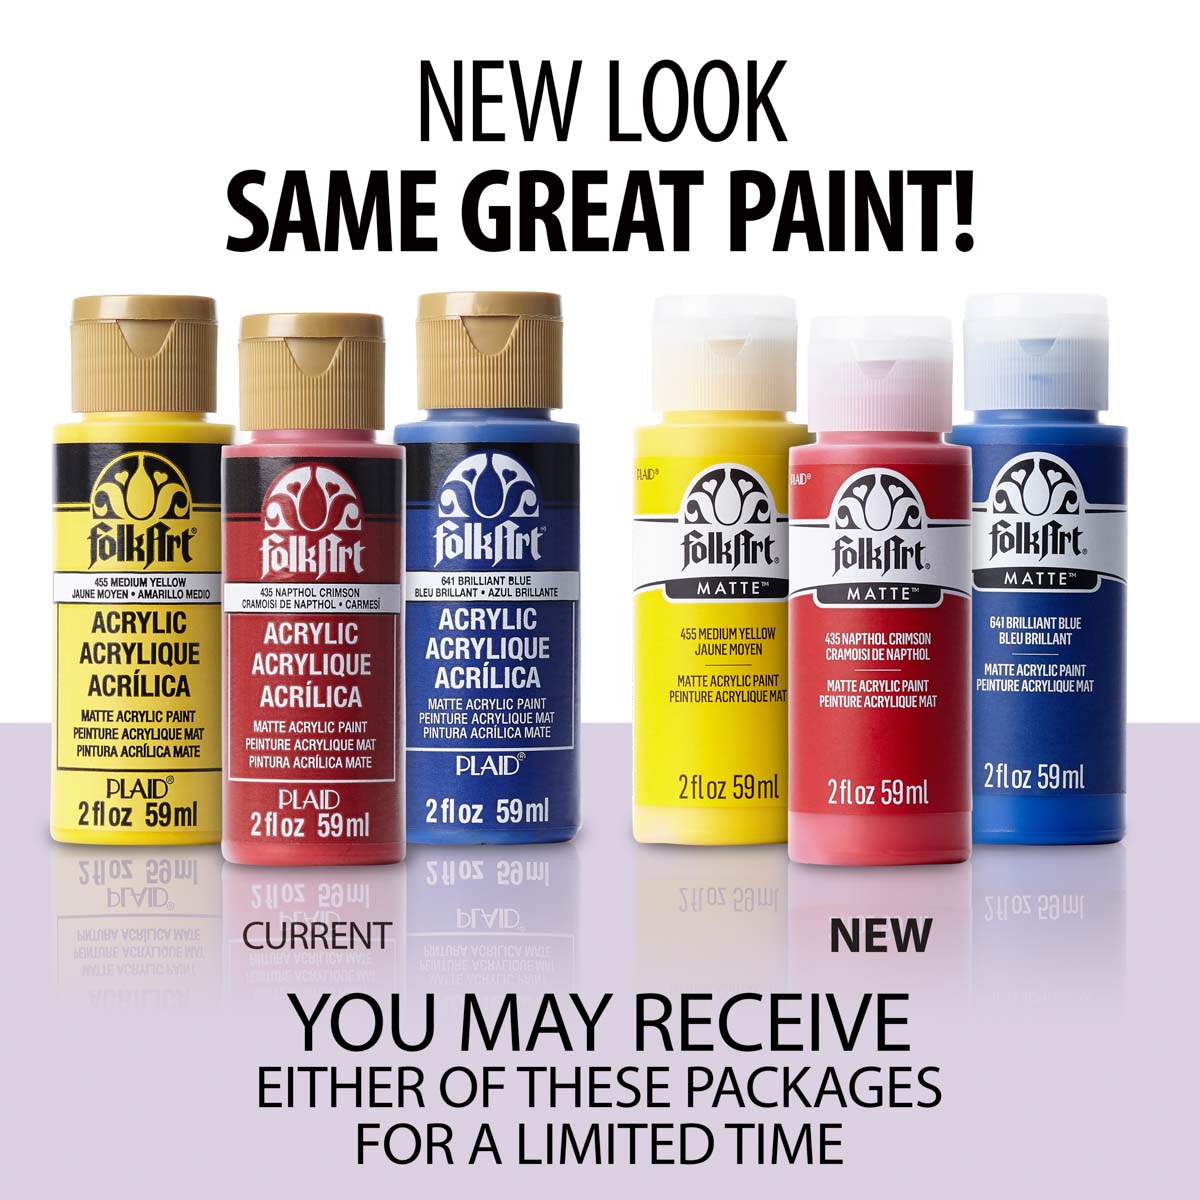 FolkArt ® Acrylic Colors Paint Set 6 Color - Under the Sea - 7514